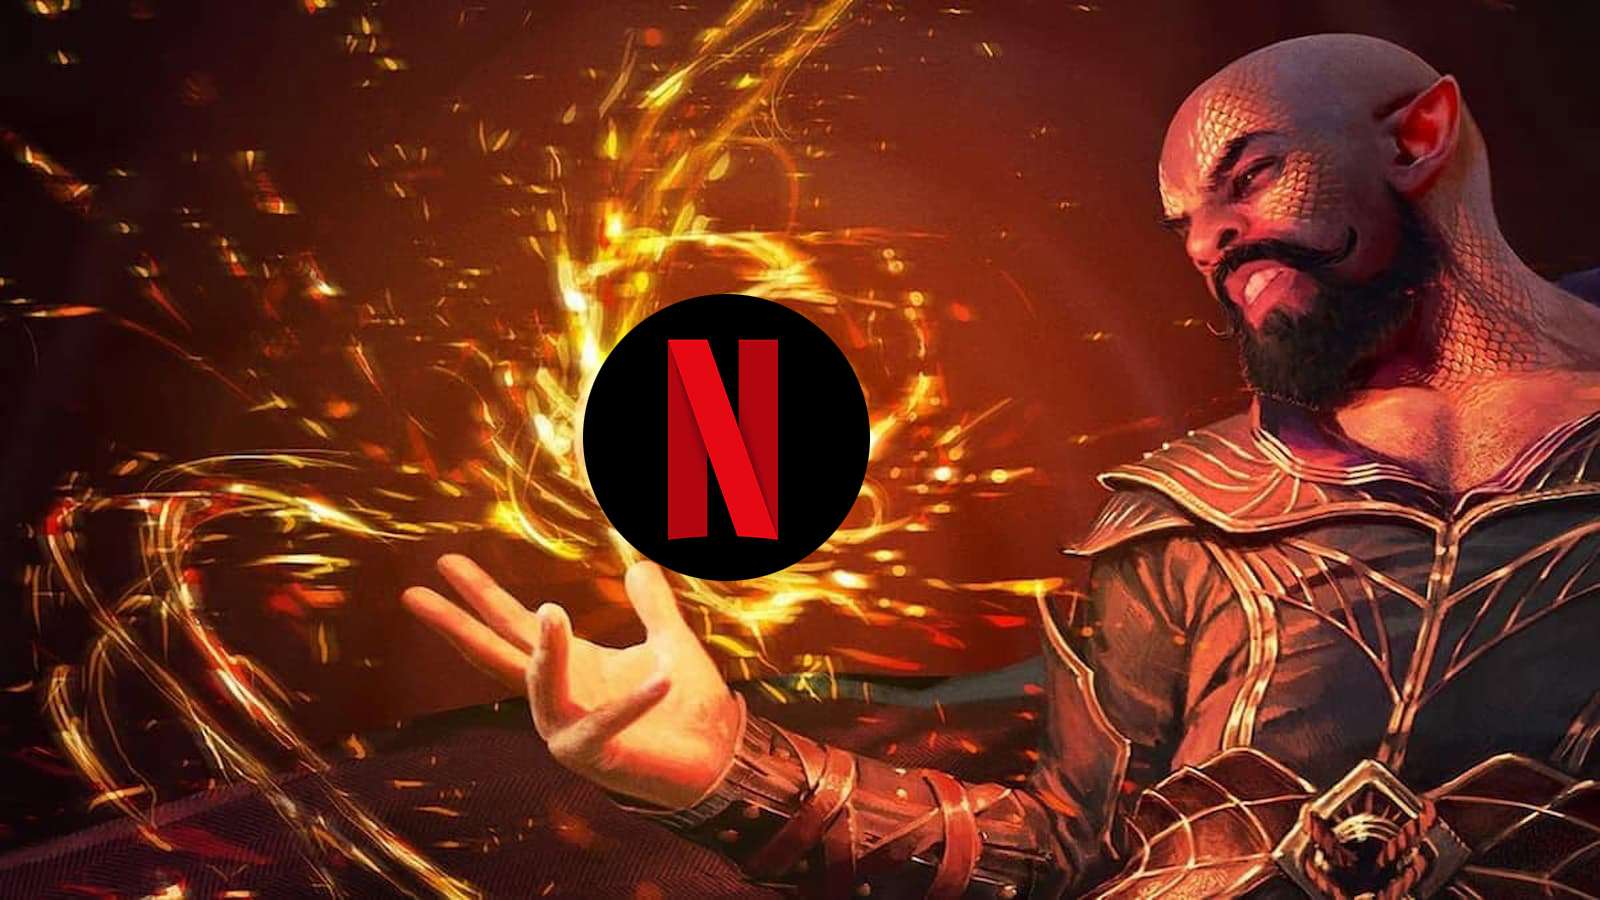 Baludr's Gate 3 Sorcerer holding the Netflix logo